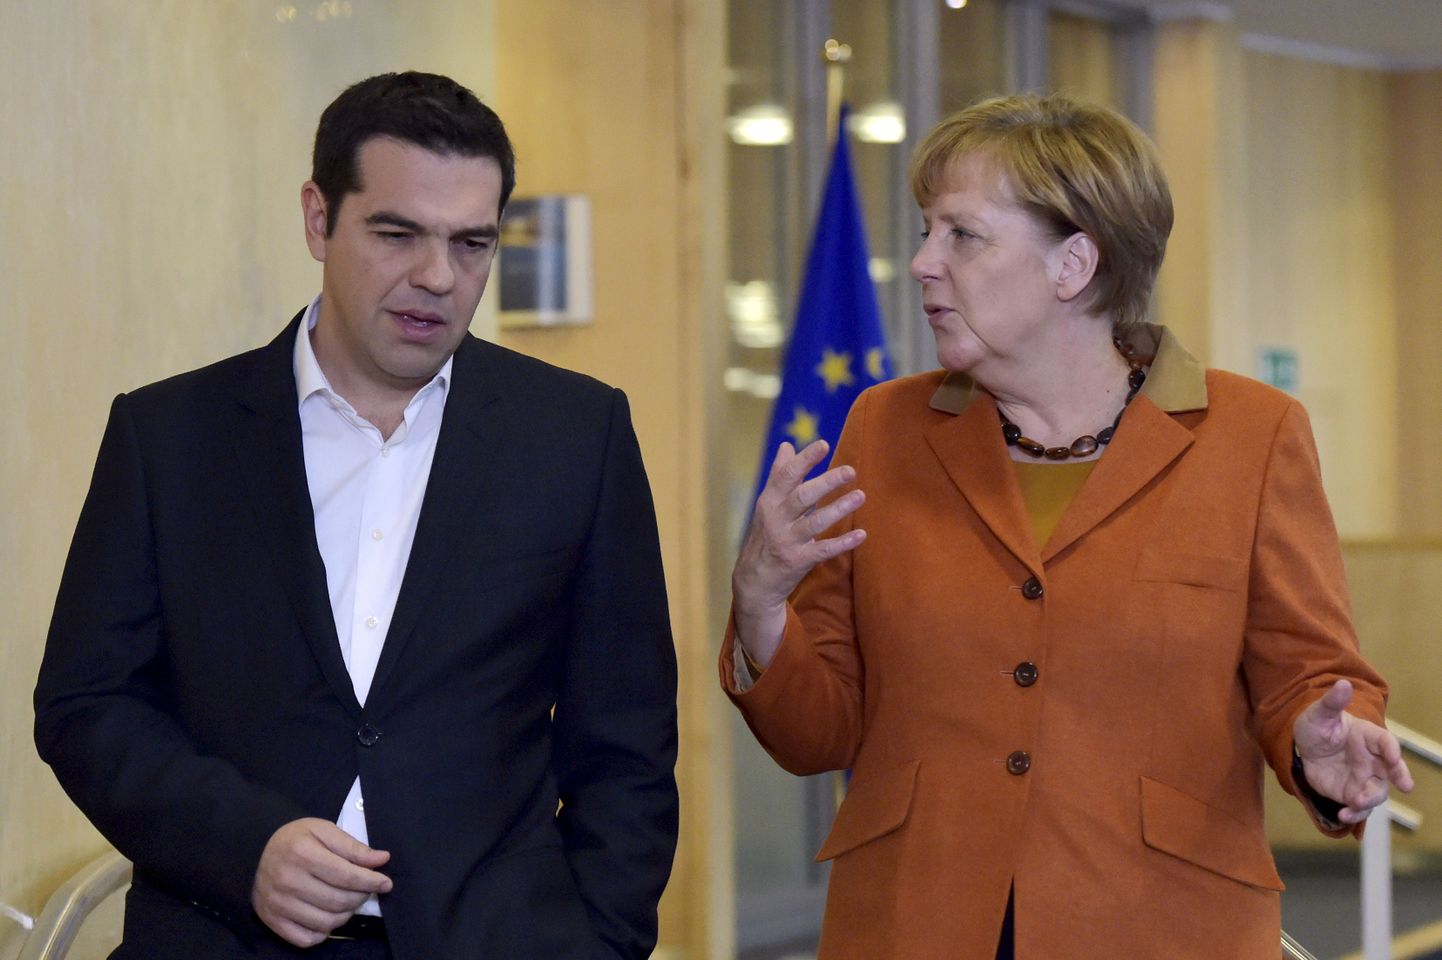 Kreeka peaminister Alexis Tsipras ja Saksamaa kantsler Angela Merkel.